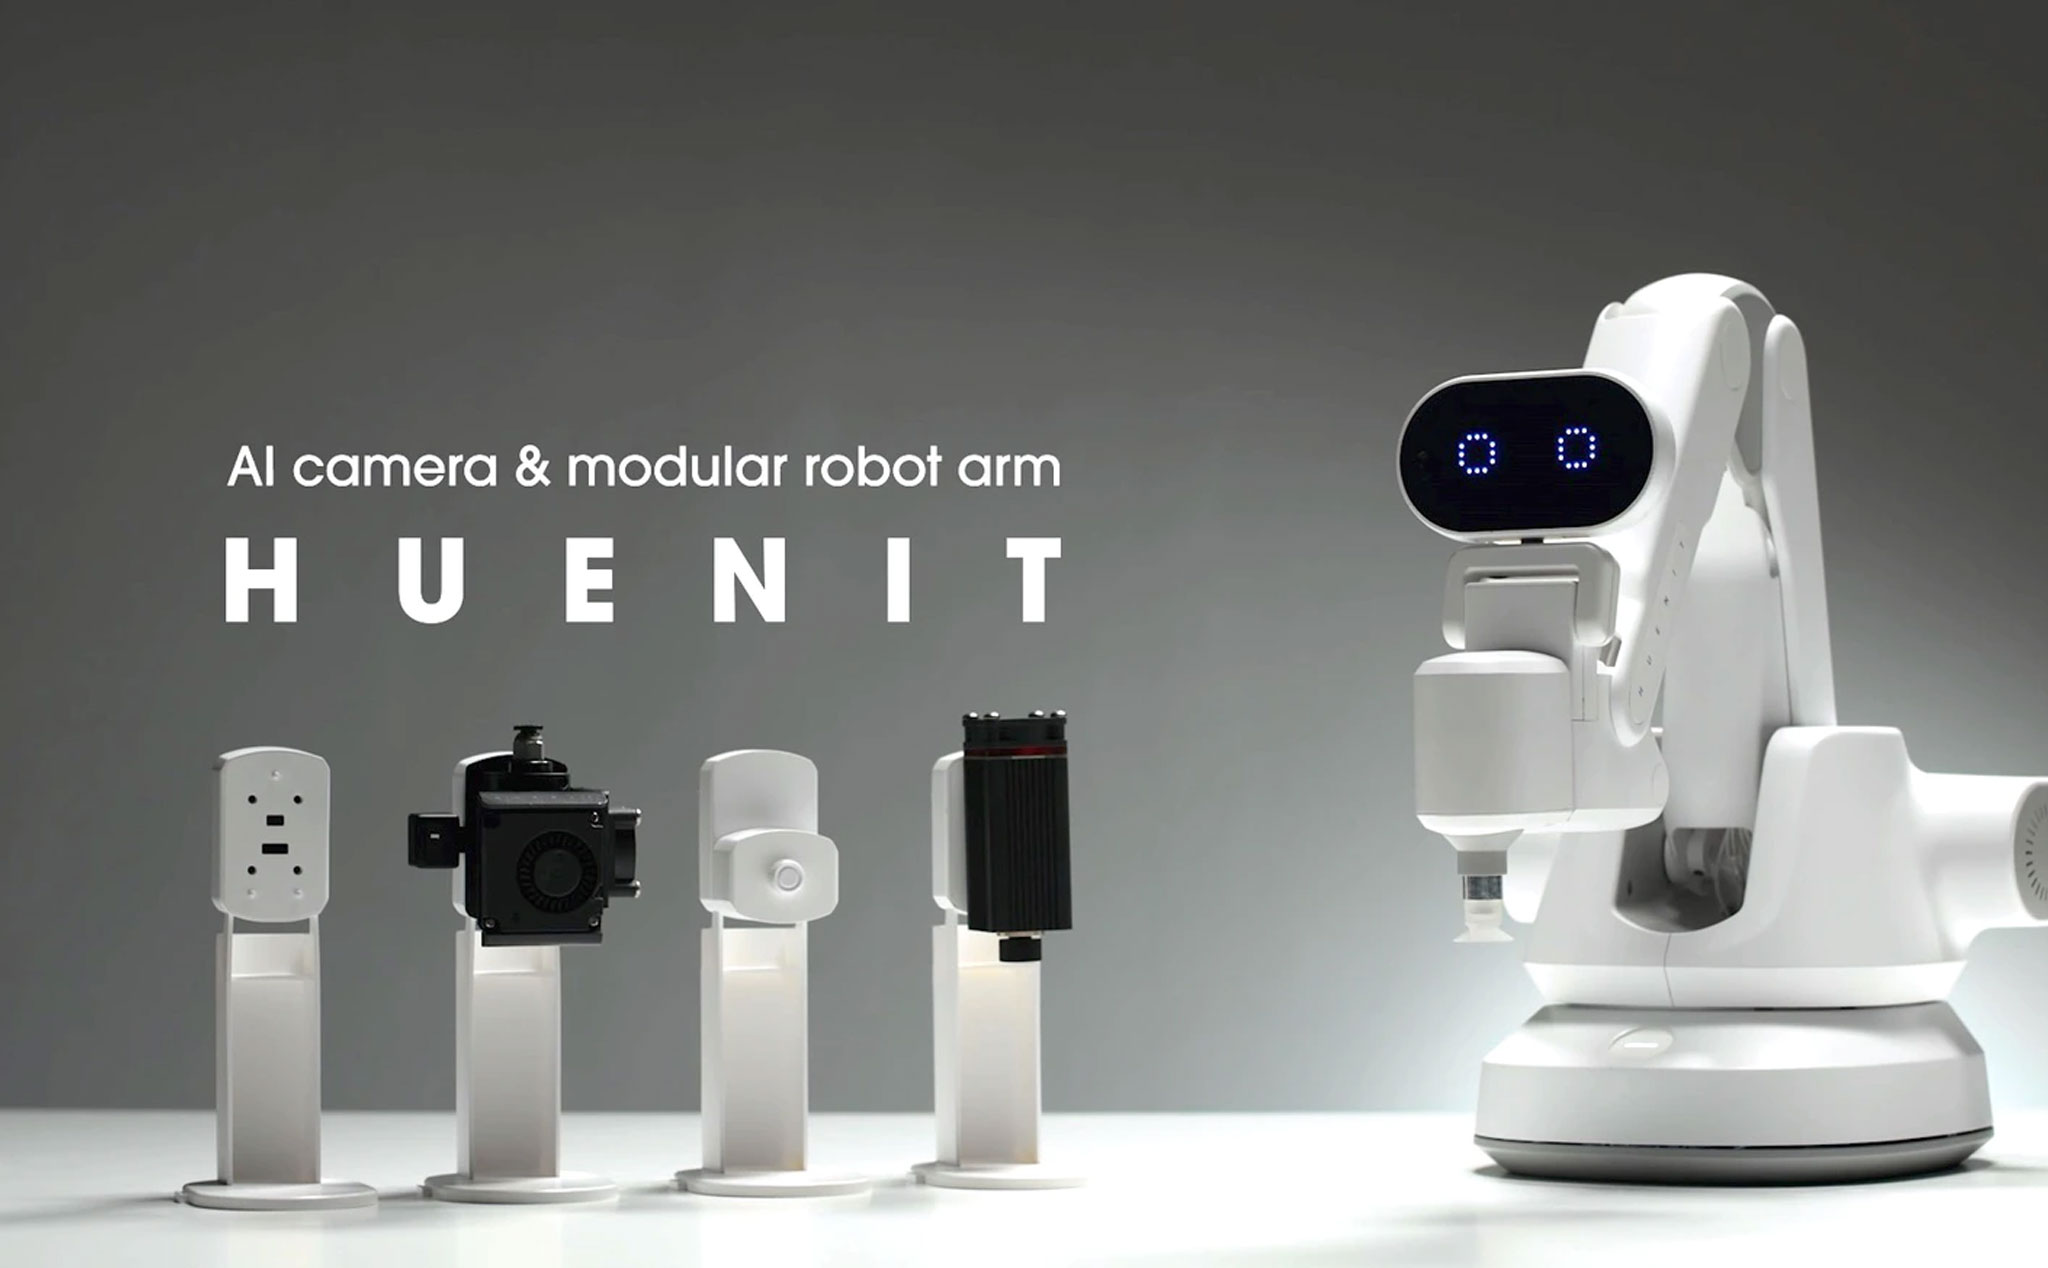 Huenit ra mắt và bán cánh tay robot AI đa năng: Làm việc nhà, cắt laser, hỗ trợ công việc